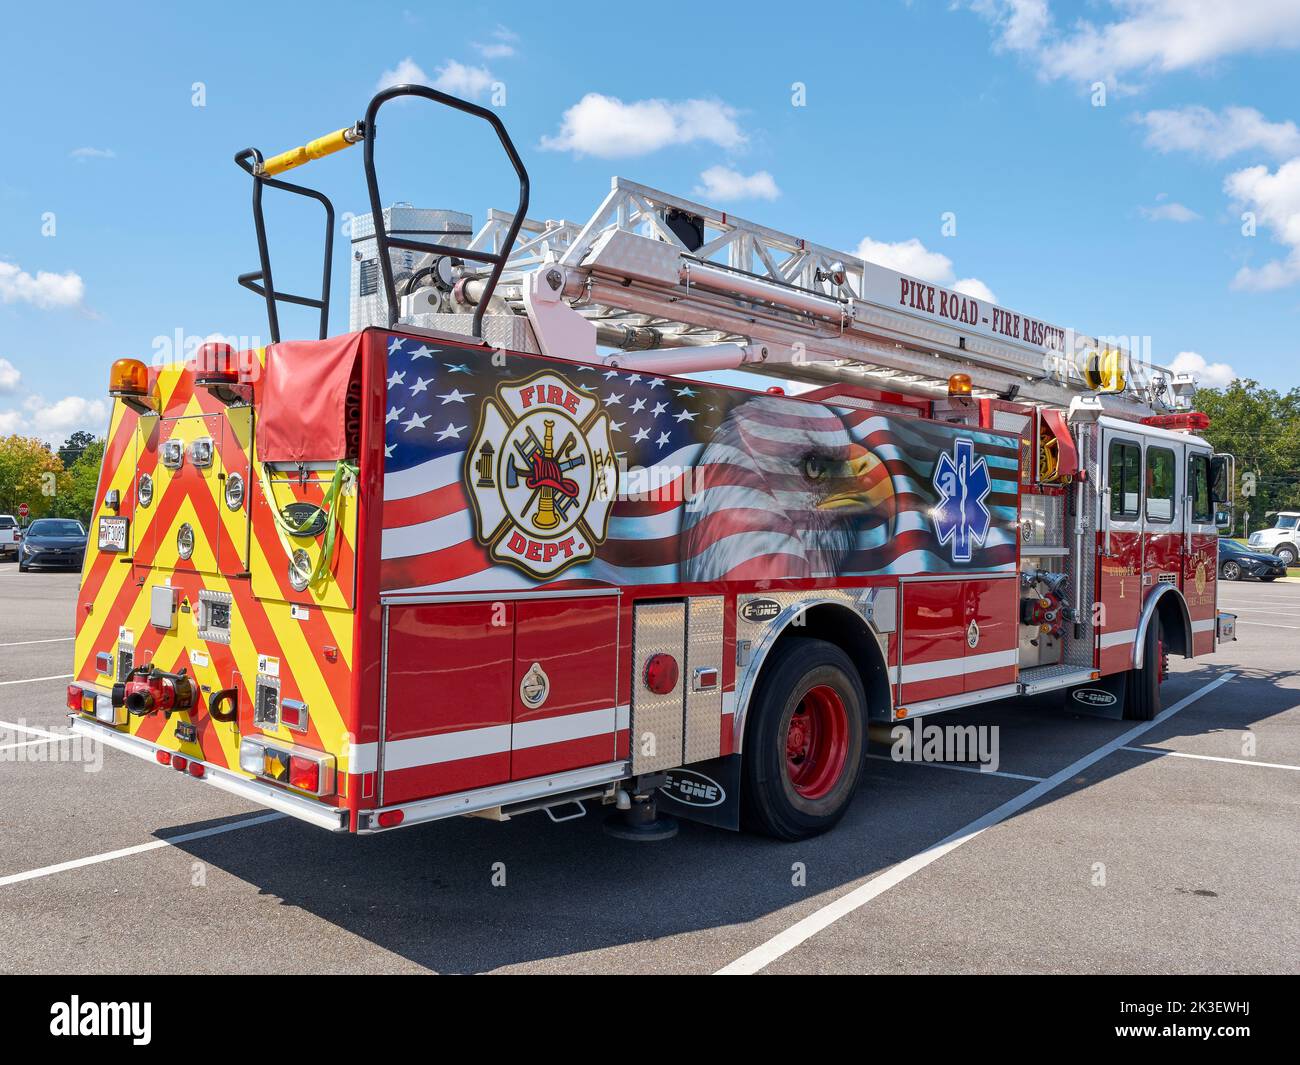 Grande camion a scala rosso volontario o camion dei pompieri utilizzato come veicolo di emergenza e veicolo di salvataggio per un locale vigili del fuoco in Pike Road Alabama, USA. Foto Stock